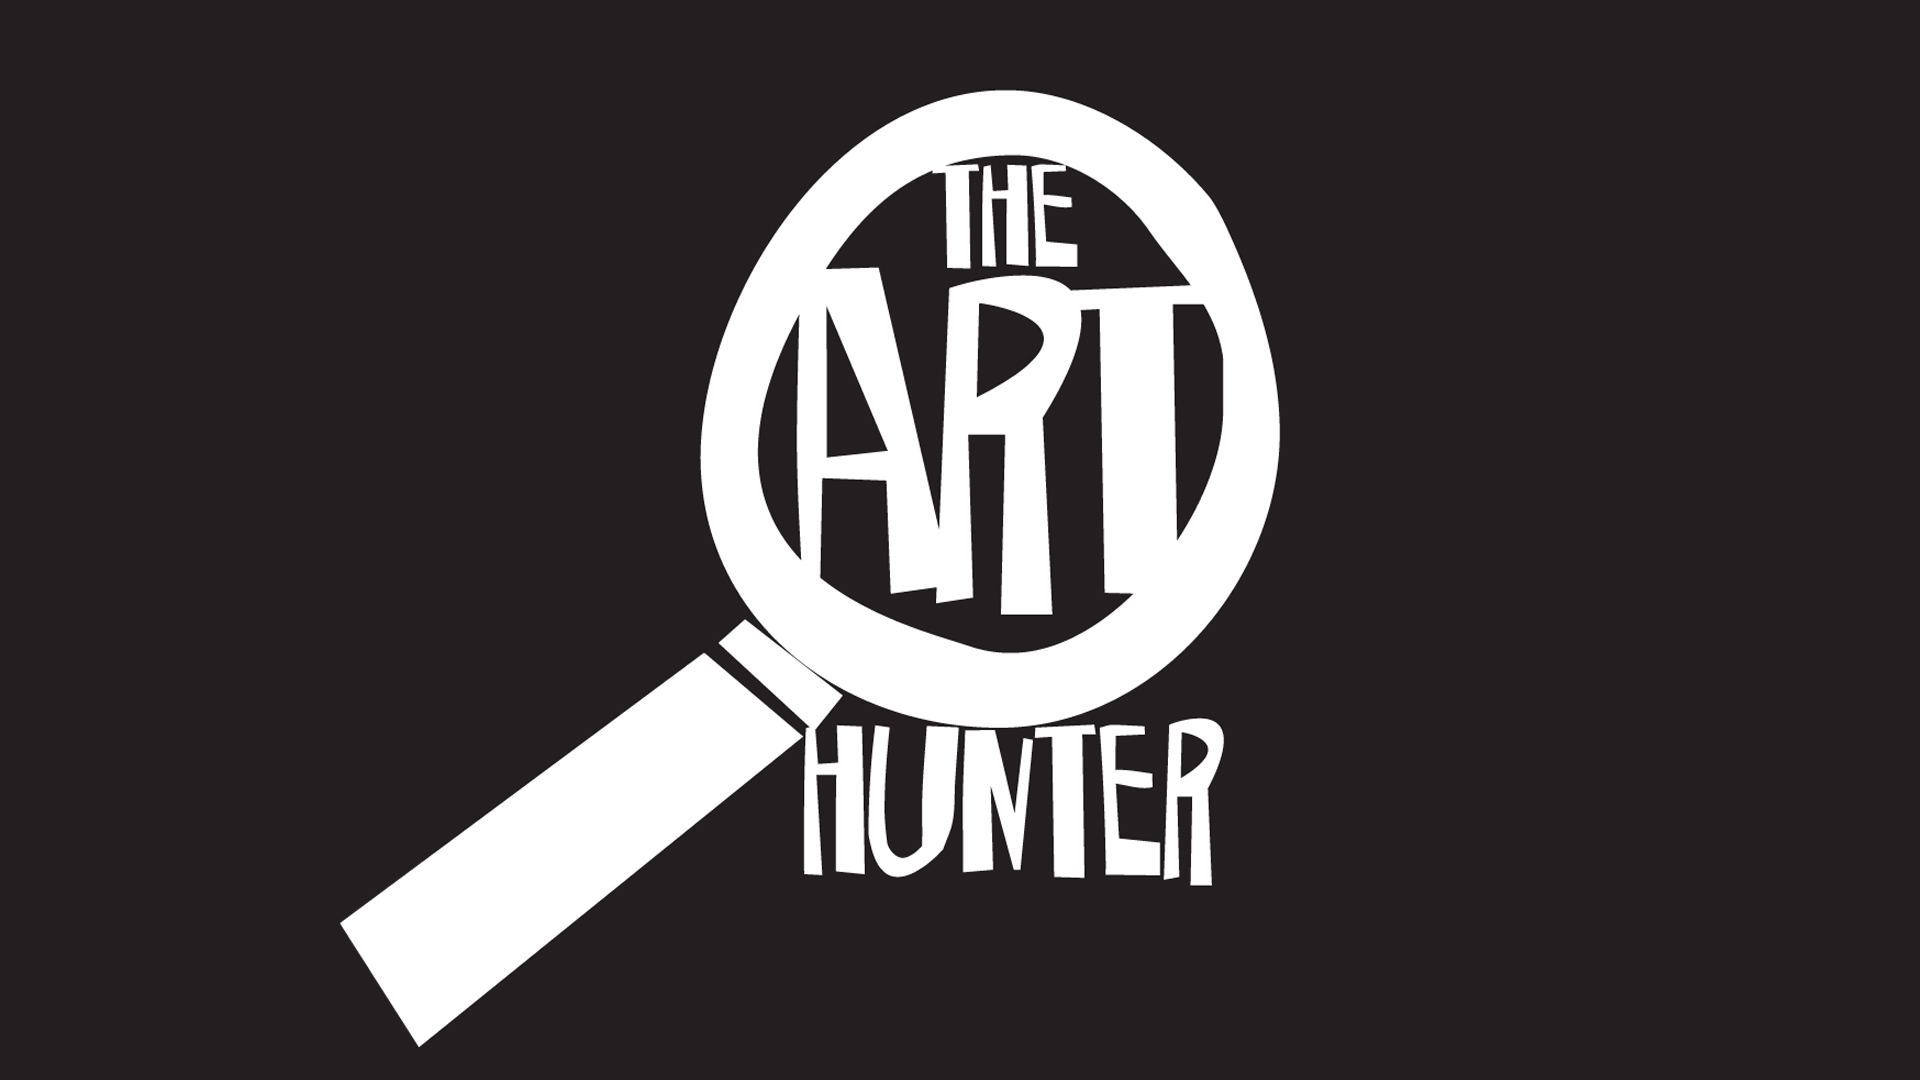 ART Hunter – John O’Hara